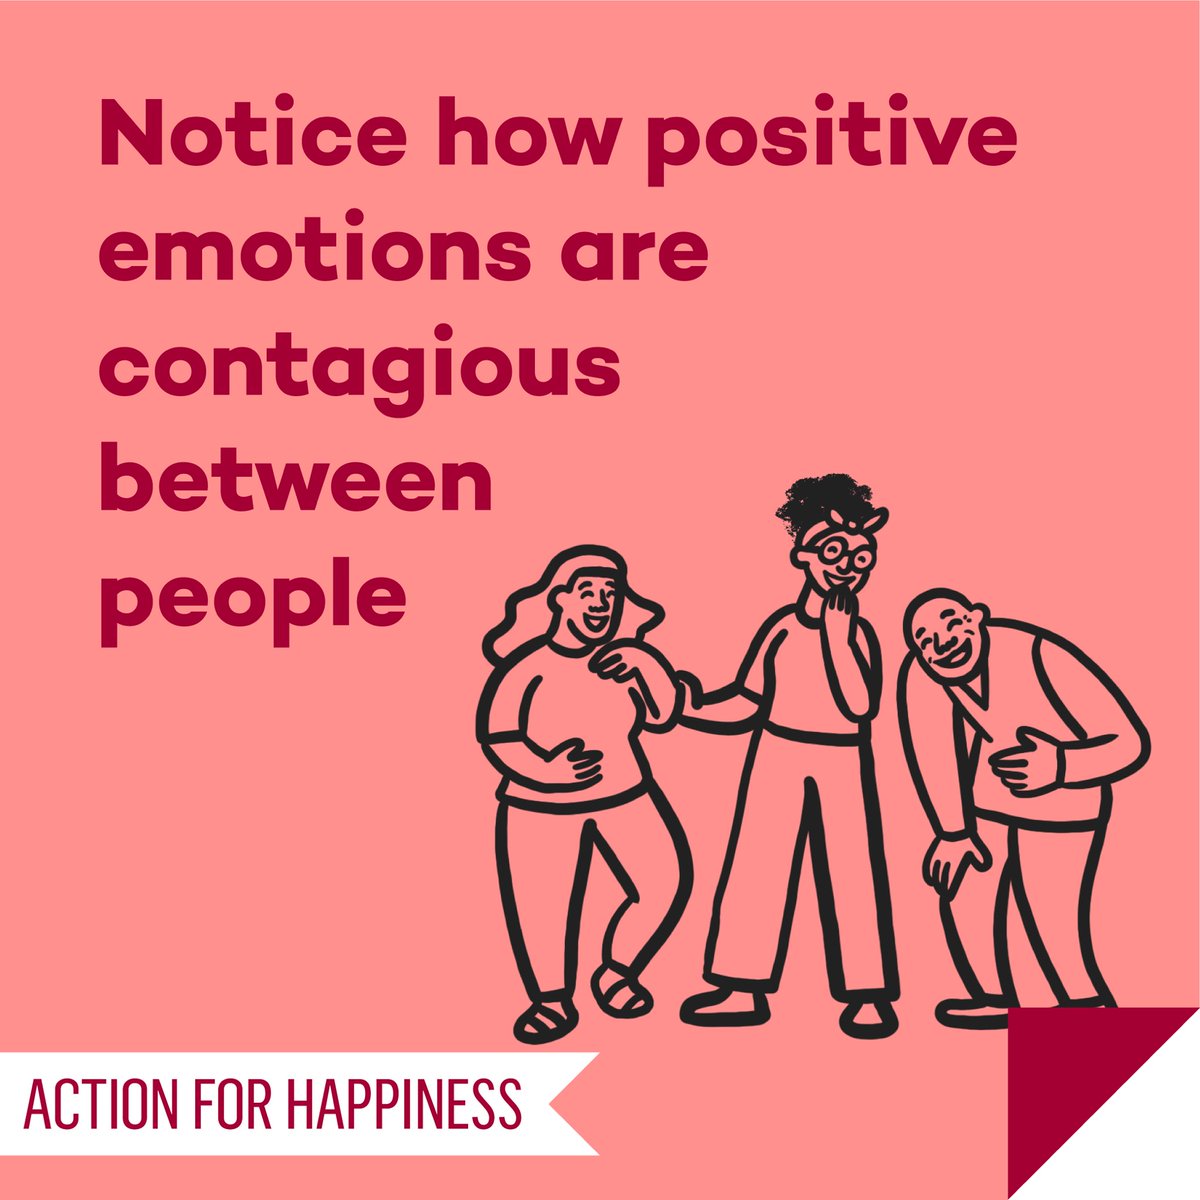 Joyful June - Day 28: Notice how positive emotions are contagious between people actionforhappiness.org/joyful-june #JoyfulJune